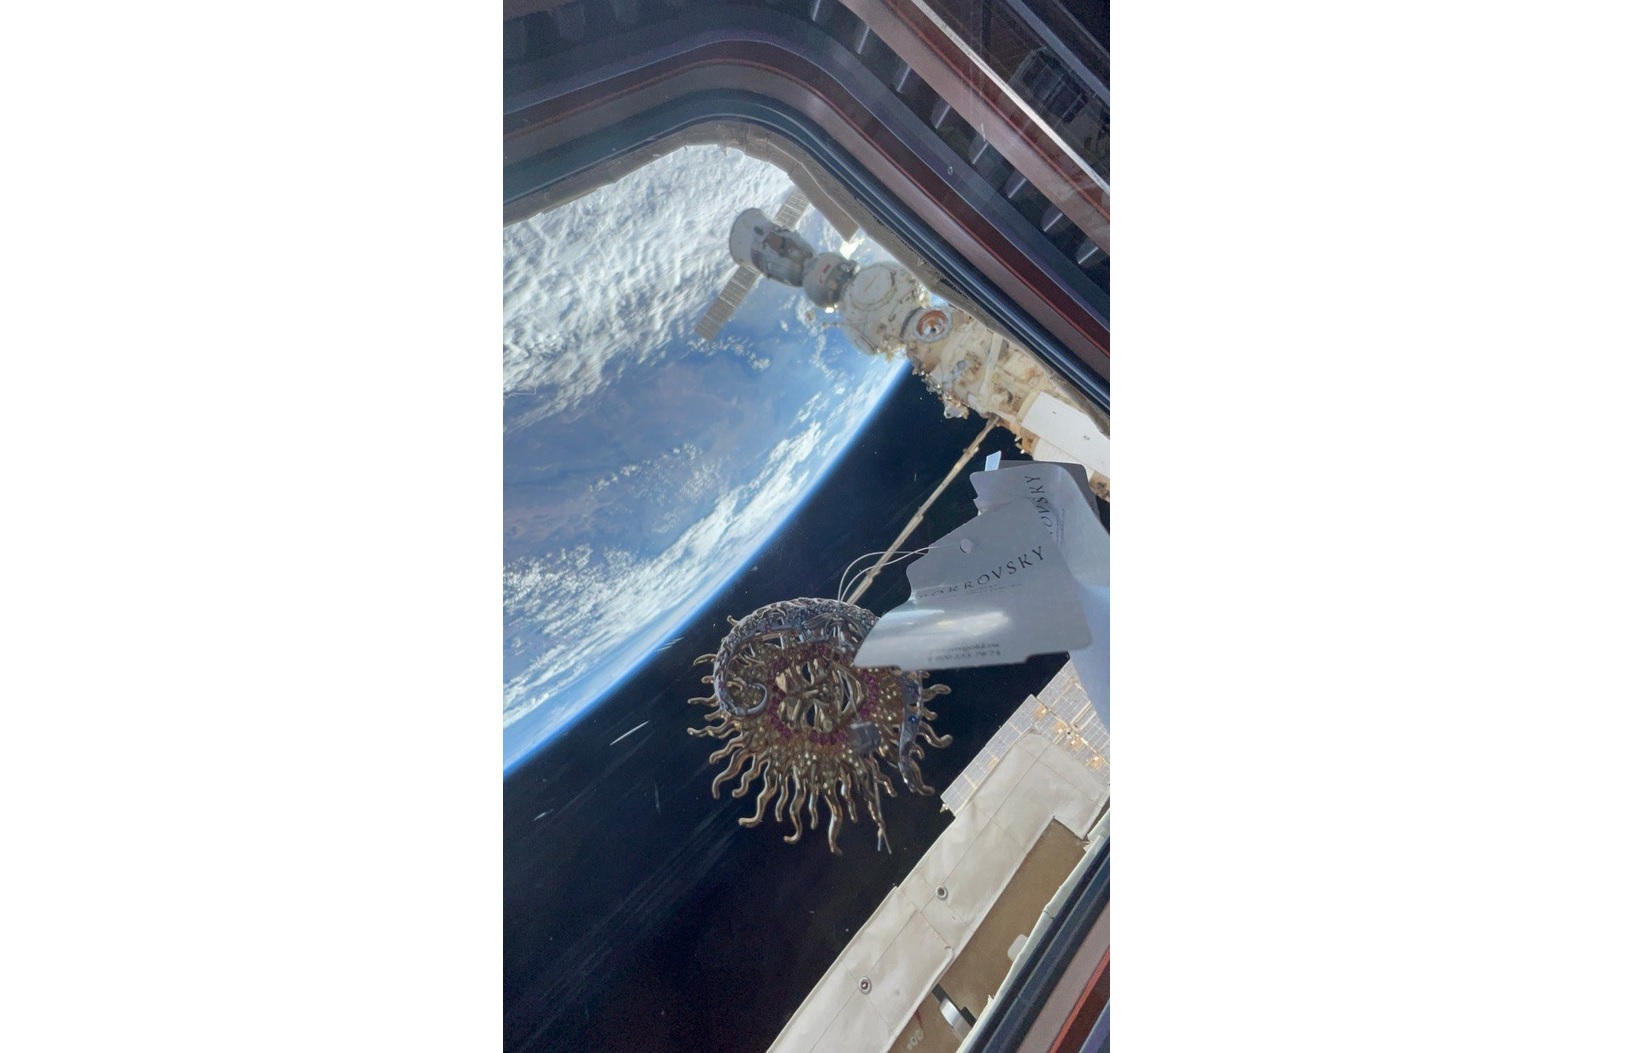 Ювелирные украшения из Покрова попали в космос